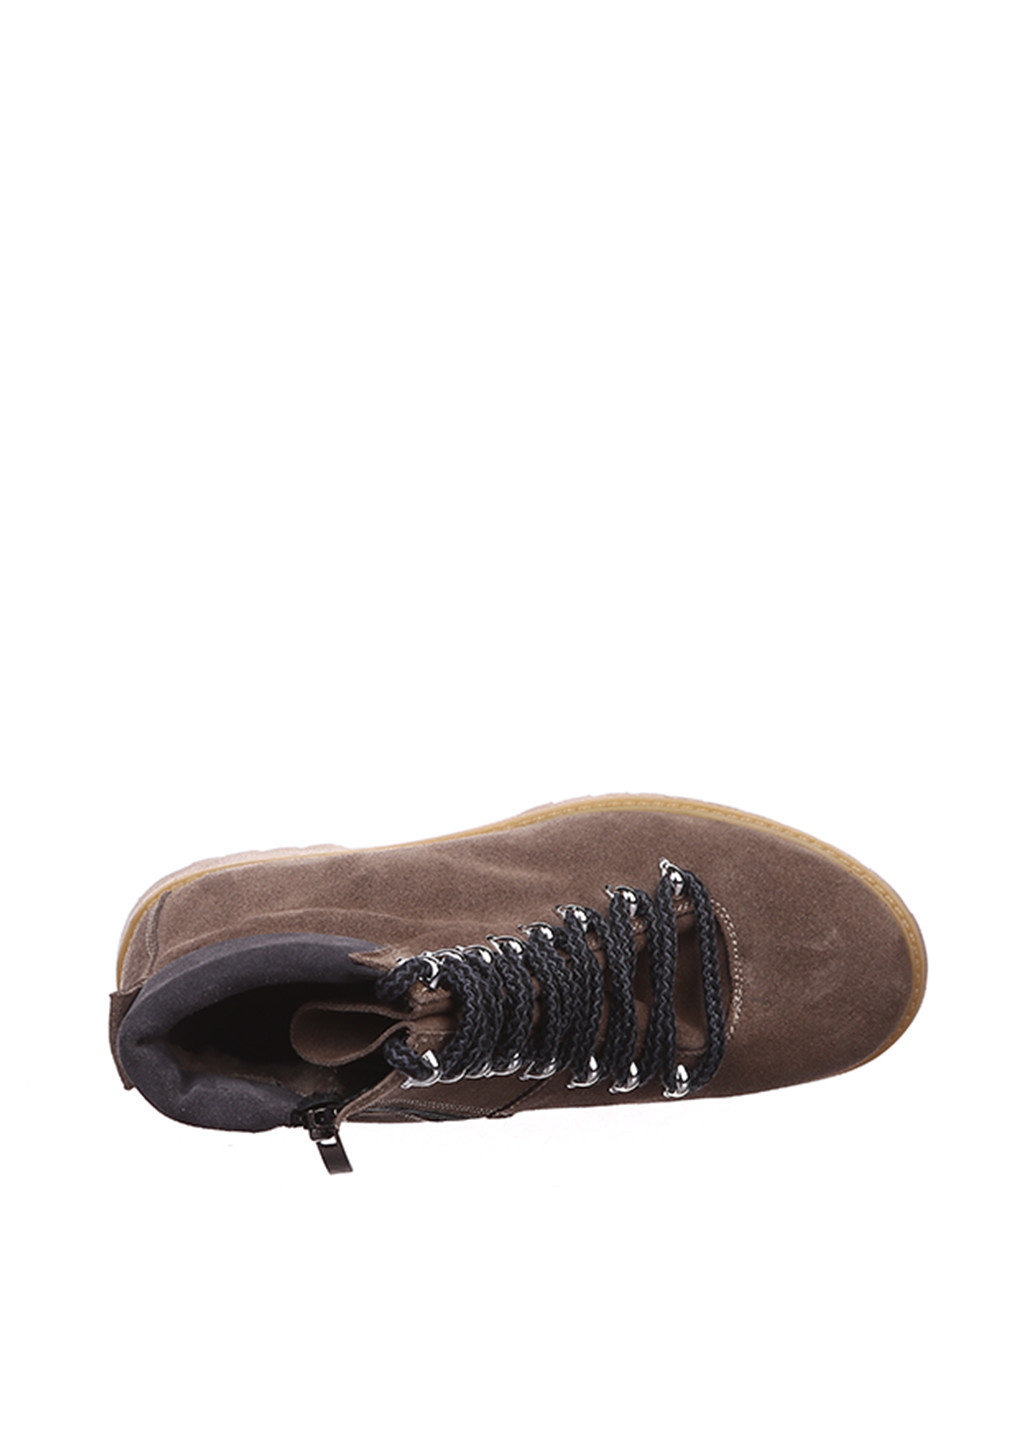 Осенние ботинки Maria Tucci со шнуровкой из натуральной замши